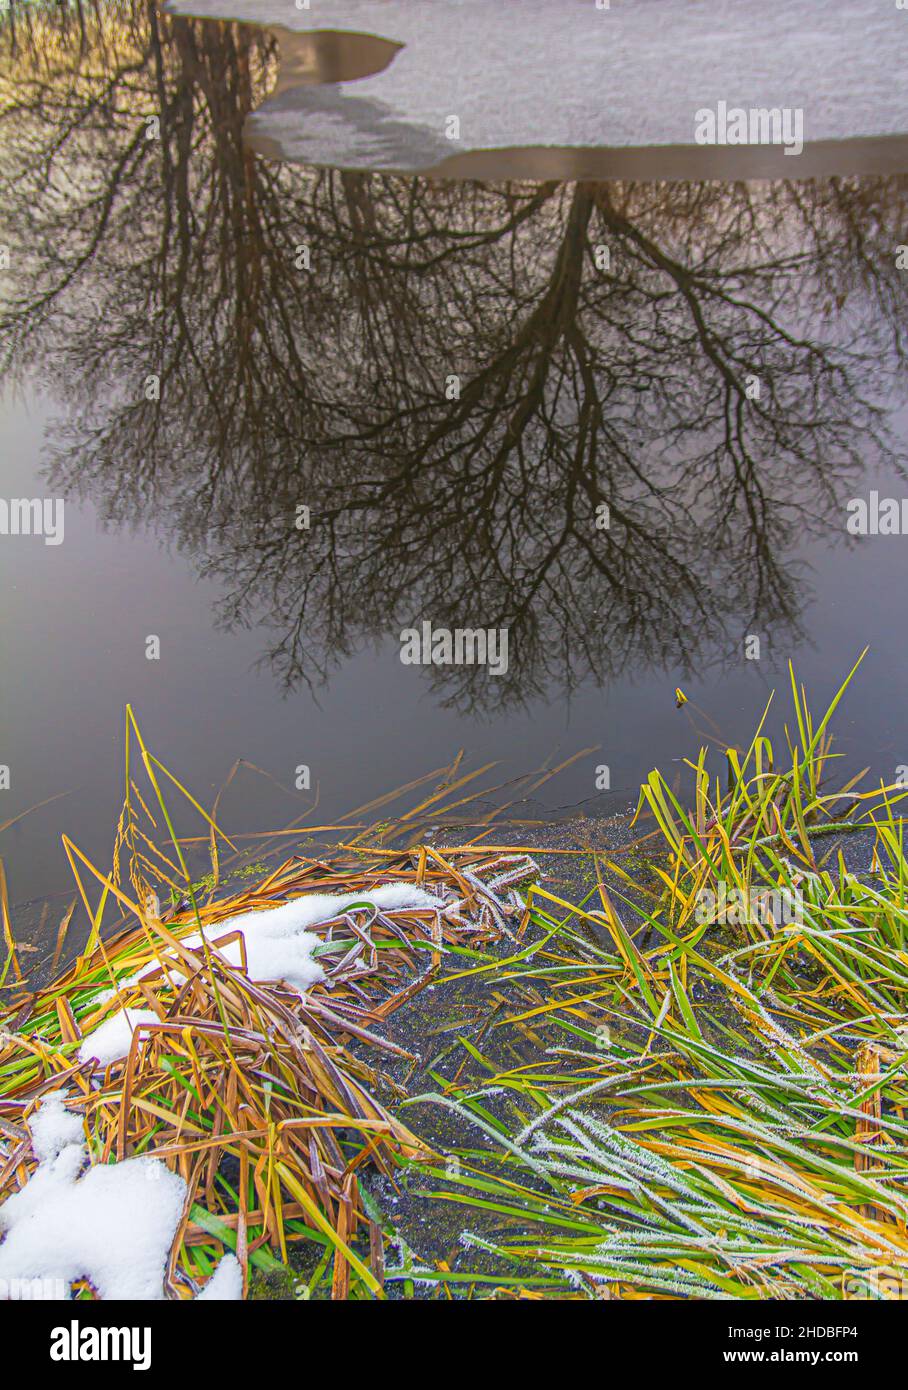 Gel de feuilles vertes de roseaux sur la rive d'un réservoir reflétant les arbres et la glace mince à la surface de l'eau Banque D'Images